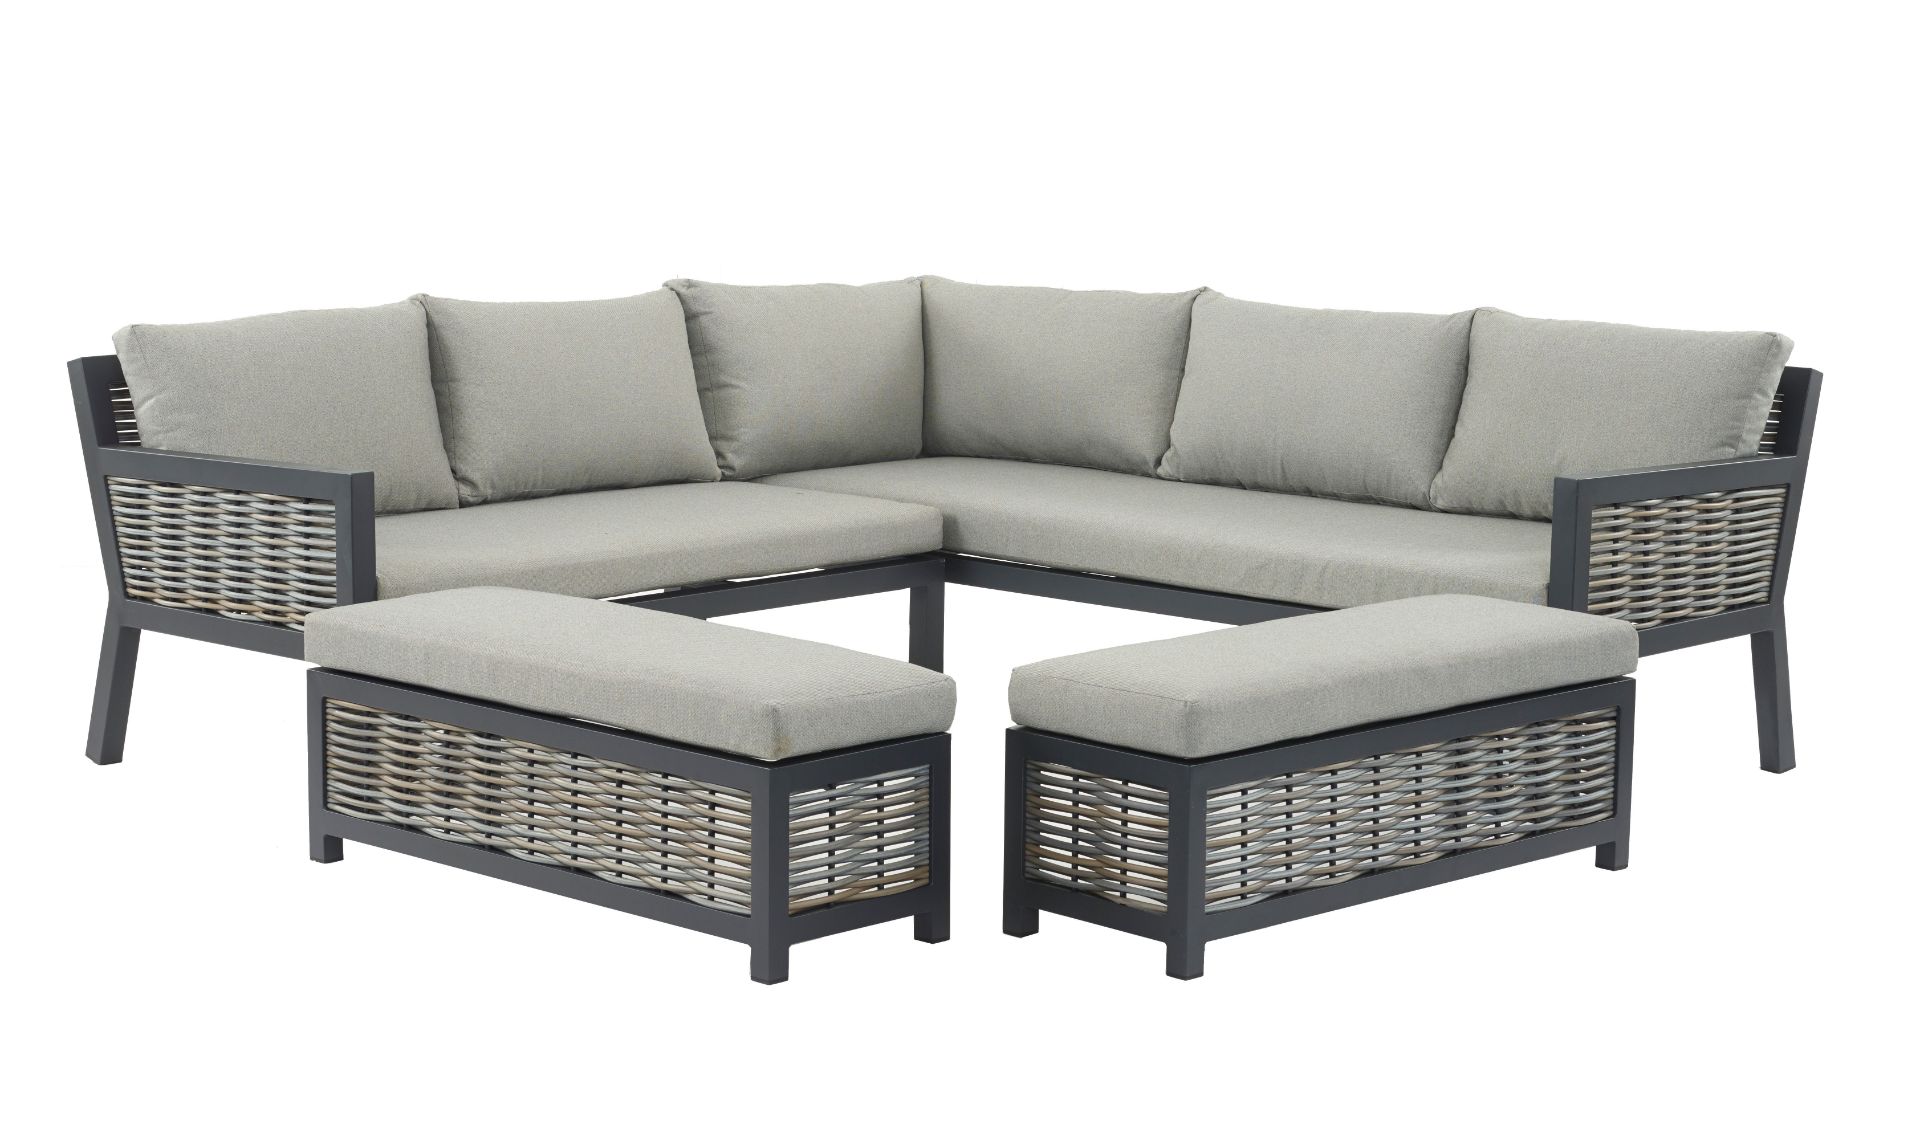 Set A400 Portofino Deluxe Wicker Square Modular Sofa with 2 Benches